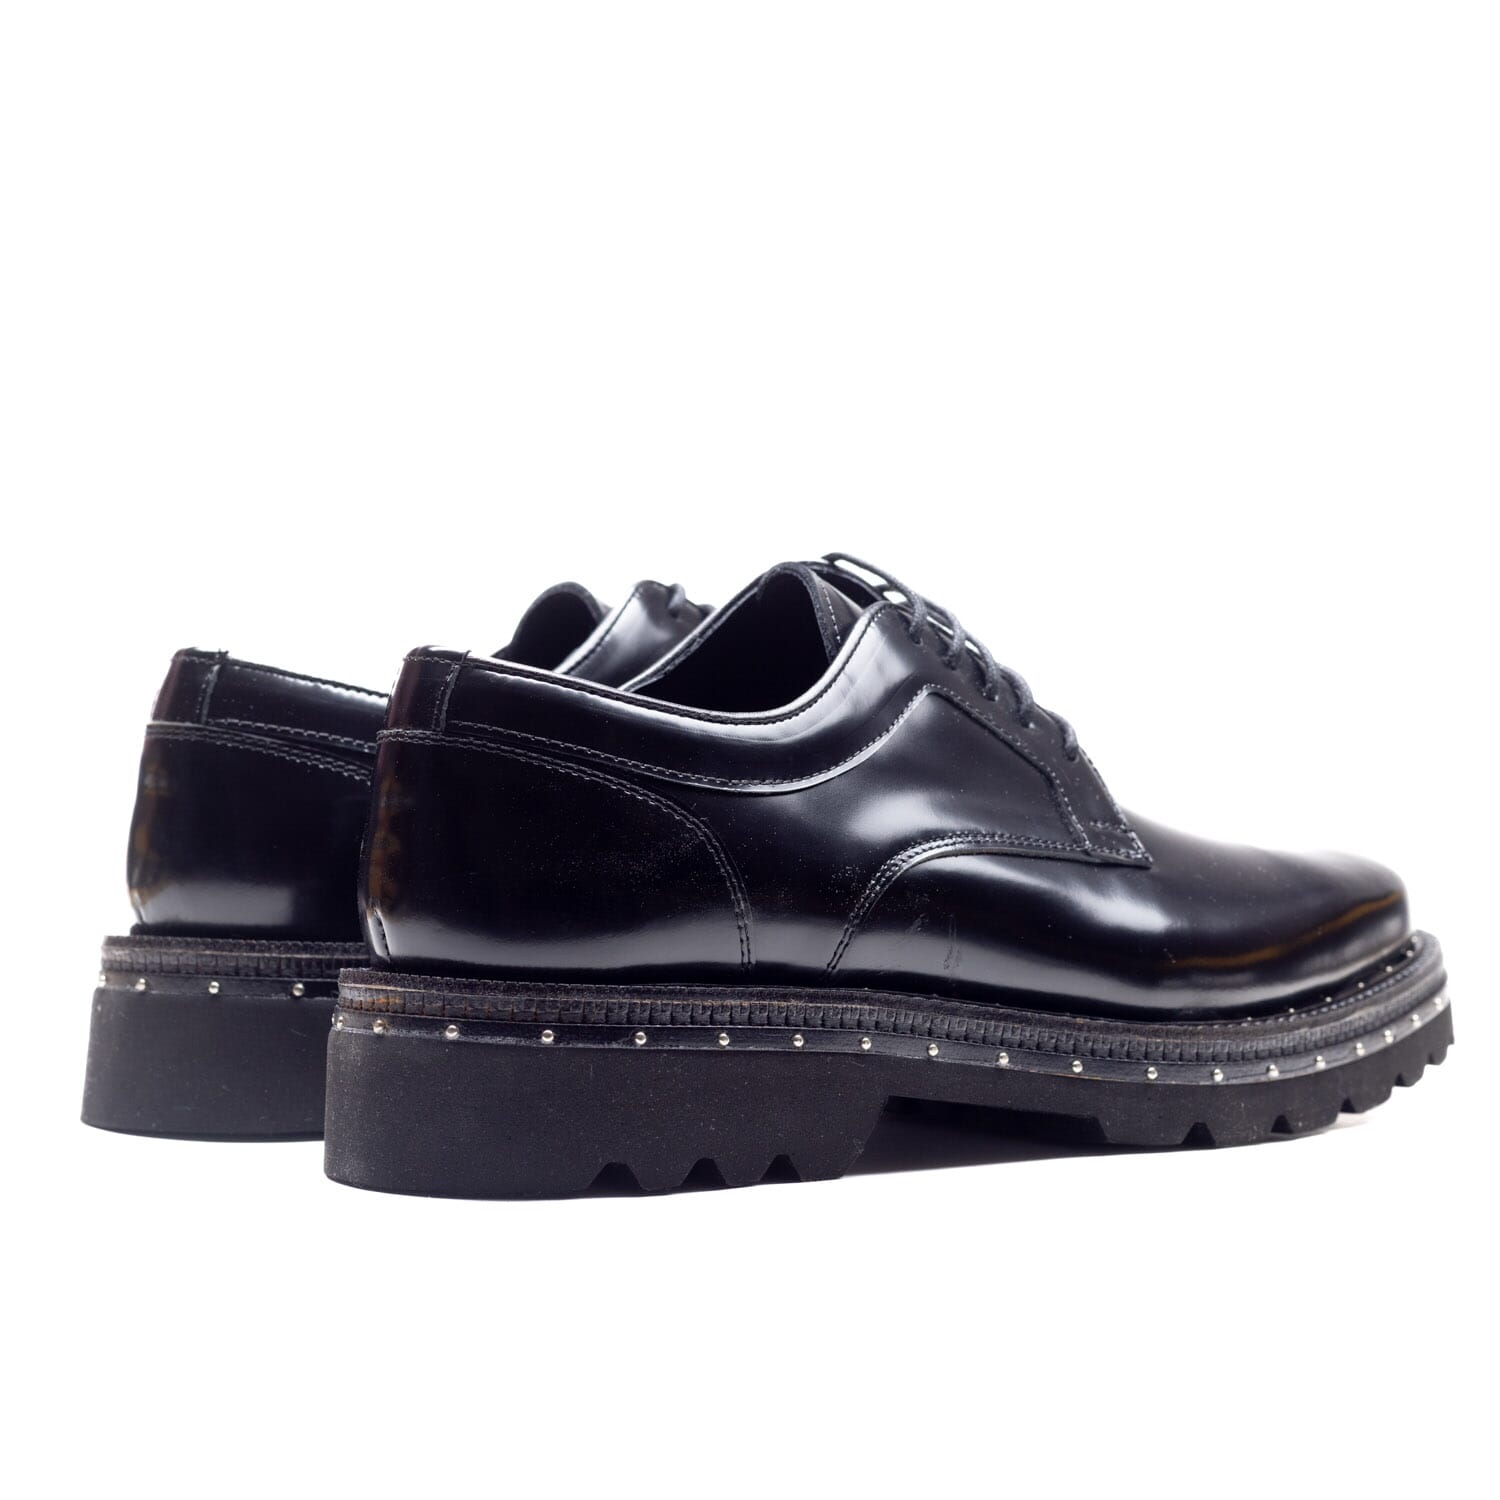 Bulleti – Sig 6746 – Black – Perocili Shoes